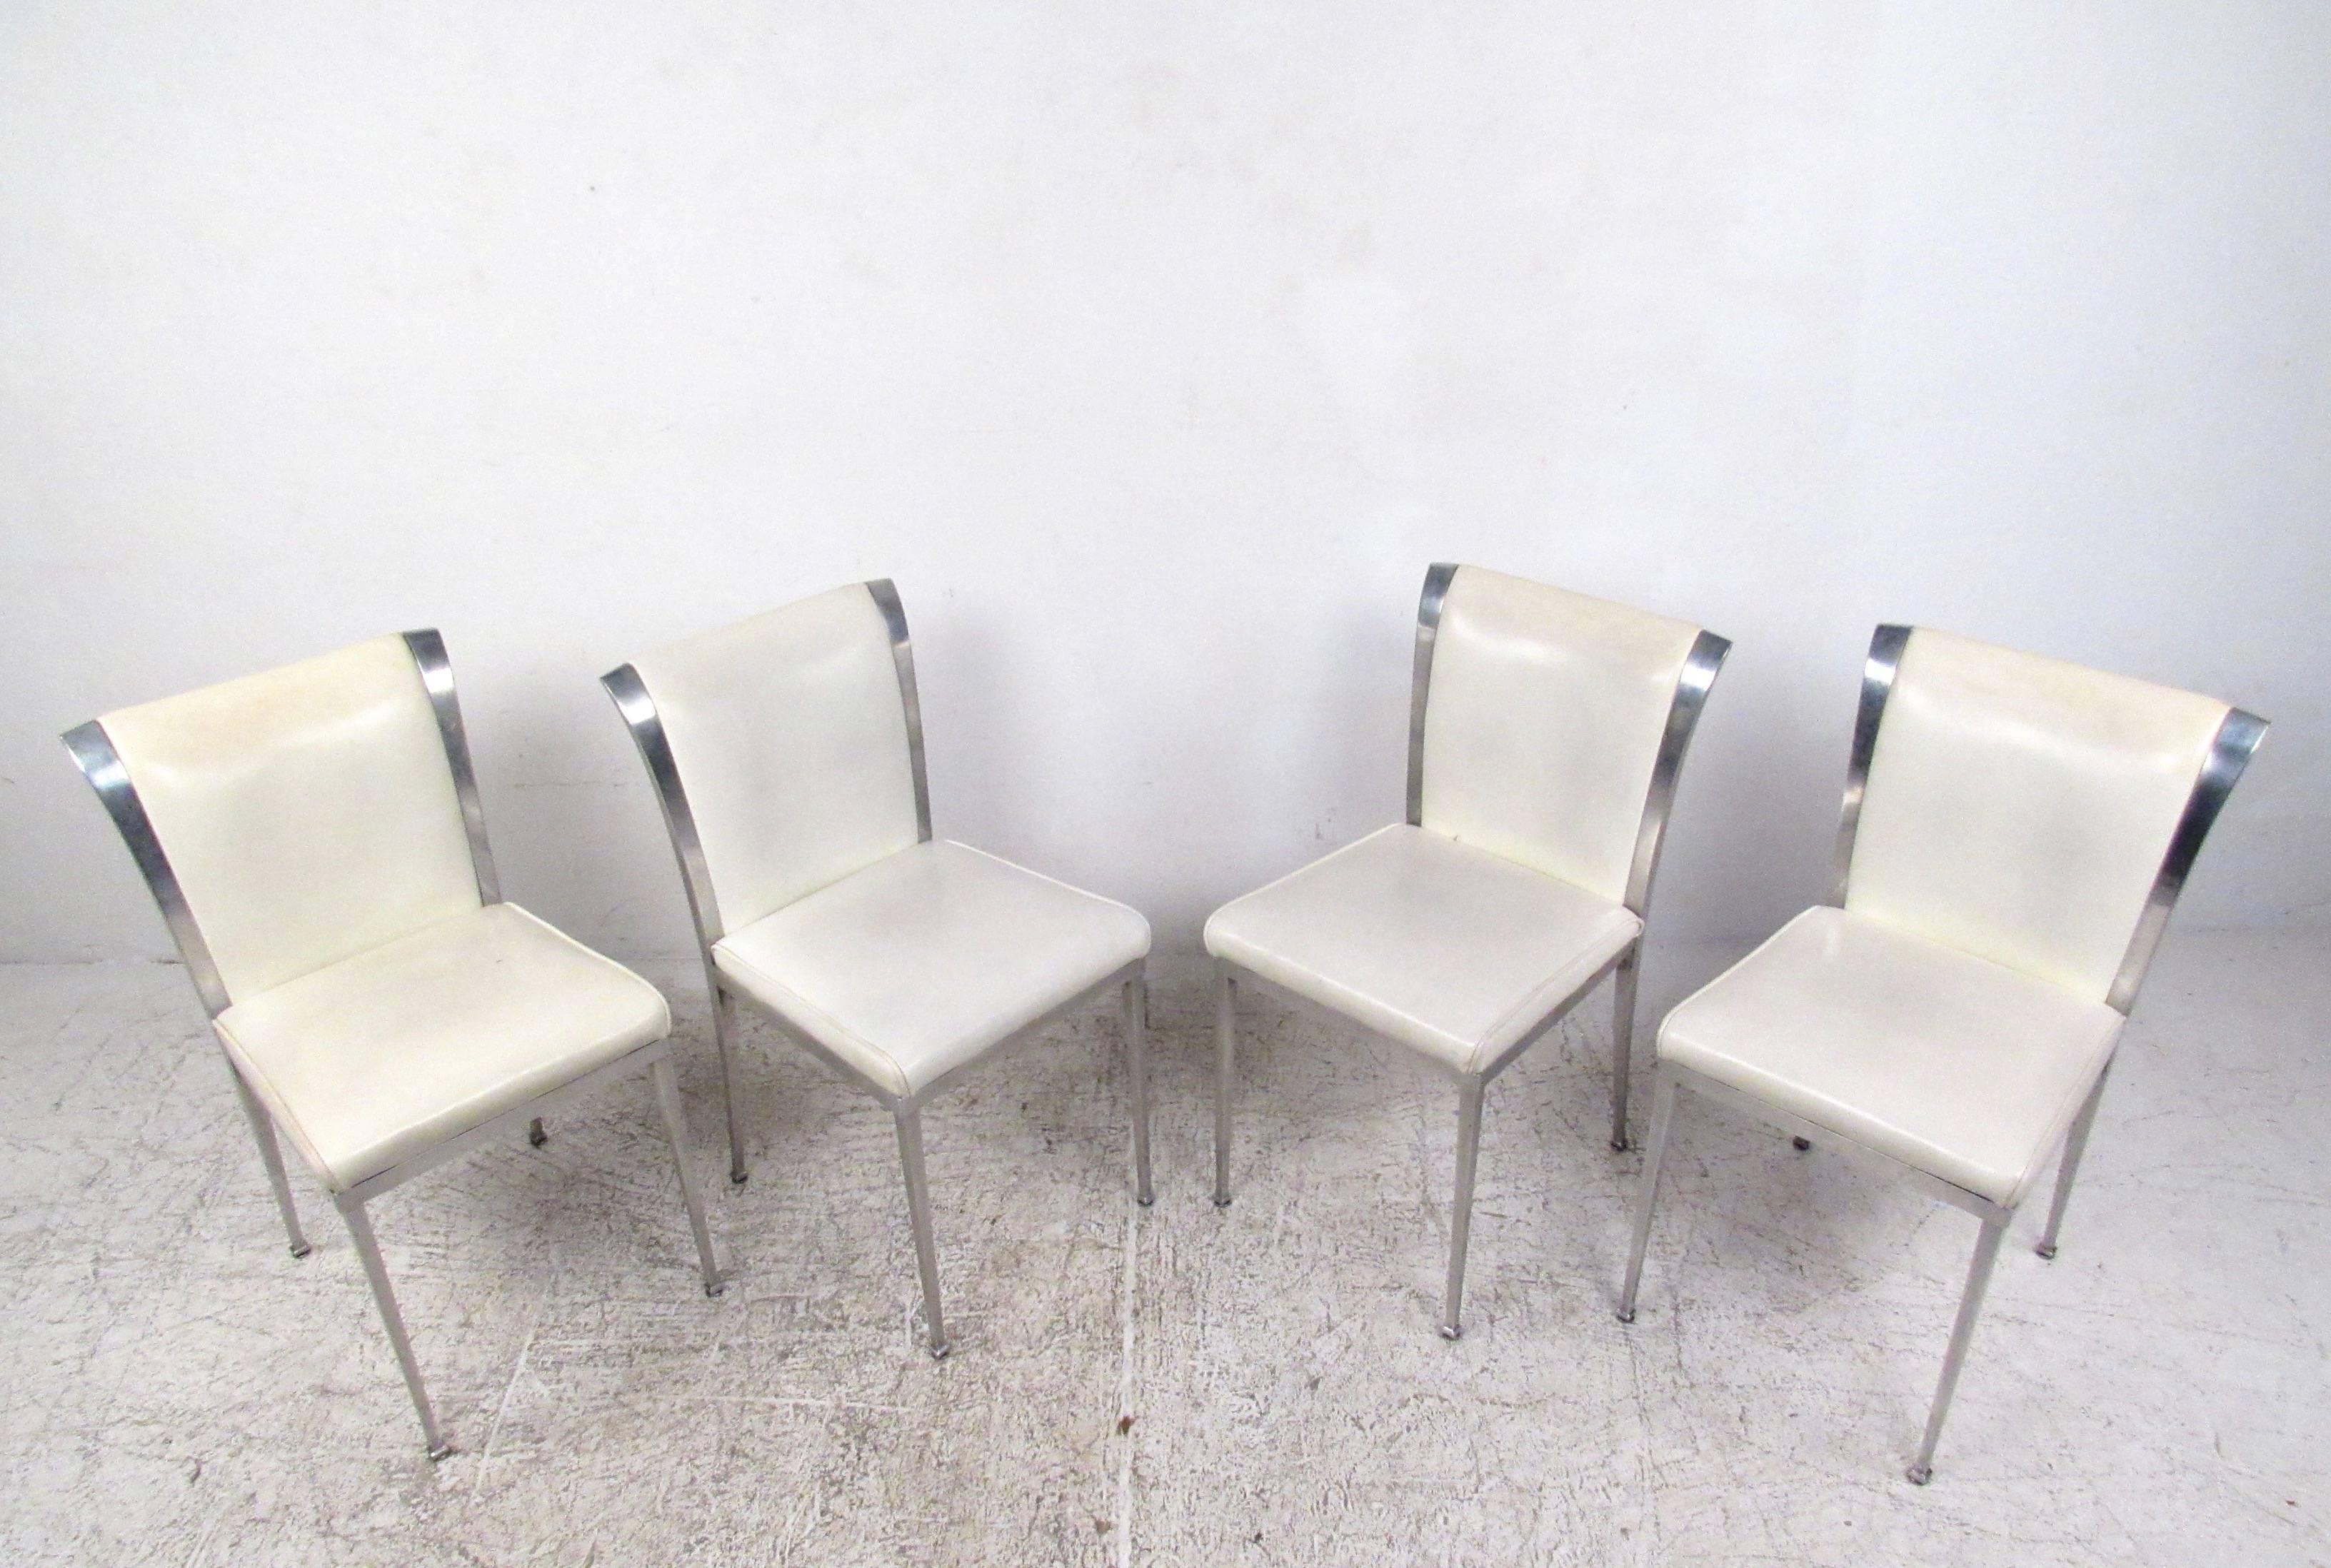 Cet ensemble de quatre chaises de salle à manger vintage a été construit avec des cadres robustes en aluminium, avec des pieds sculptés d'une seule pièce et des supports de dos effilés. Les dossiers légèrement évasés sont recouverts de vinyle